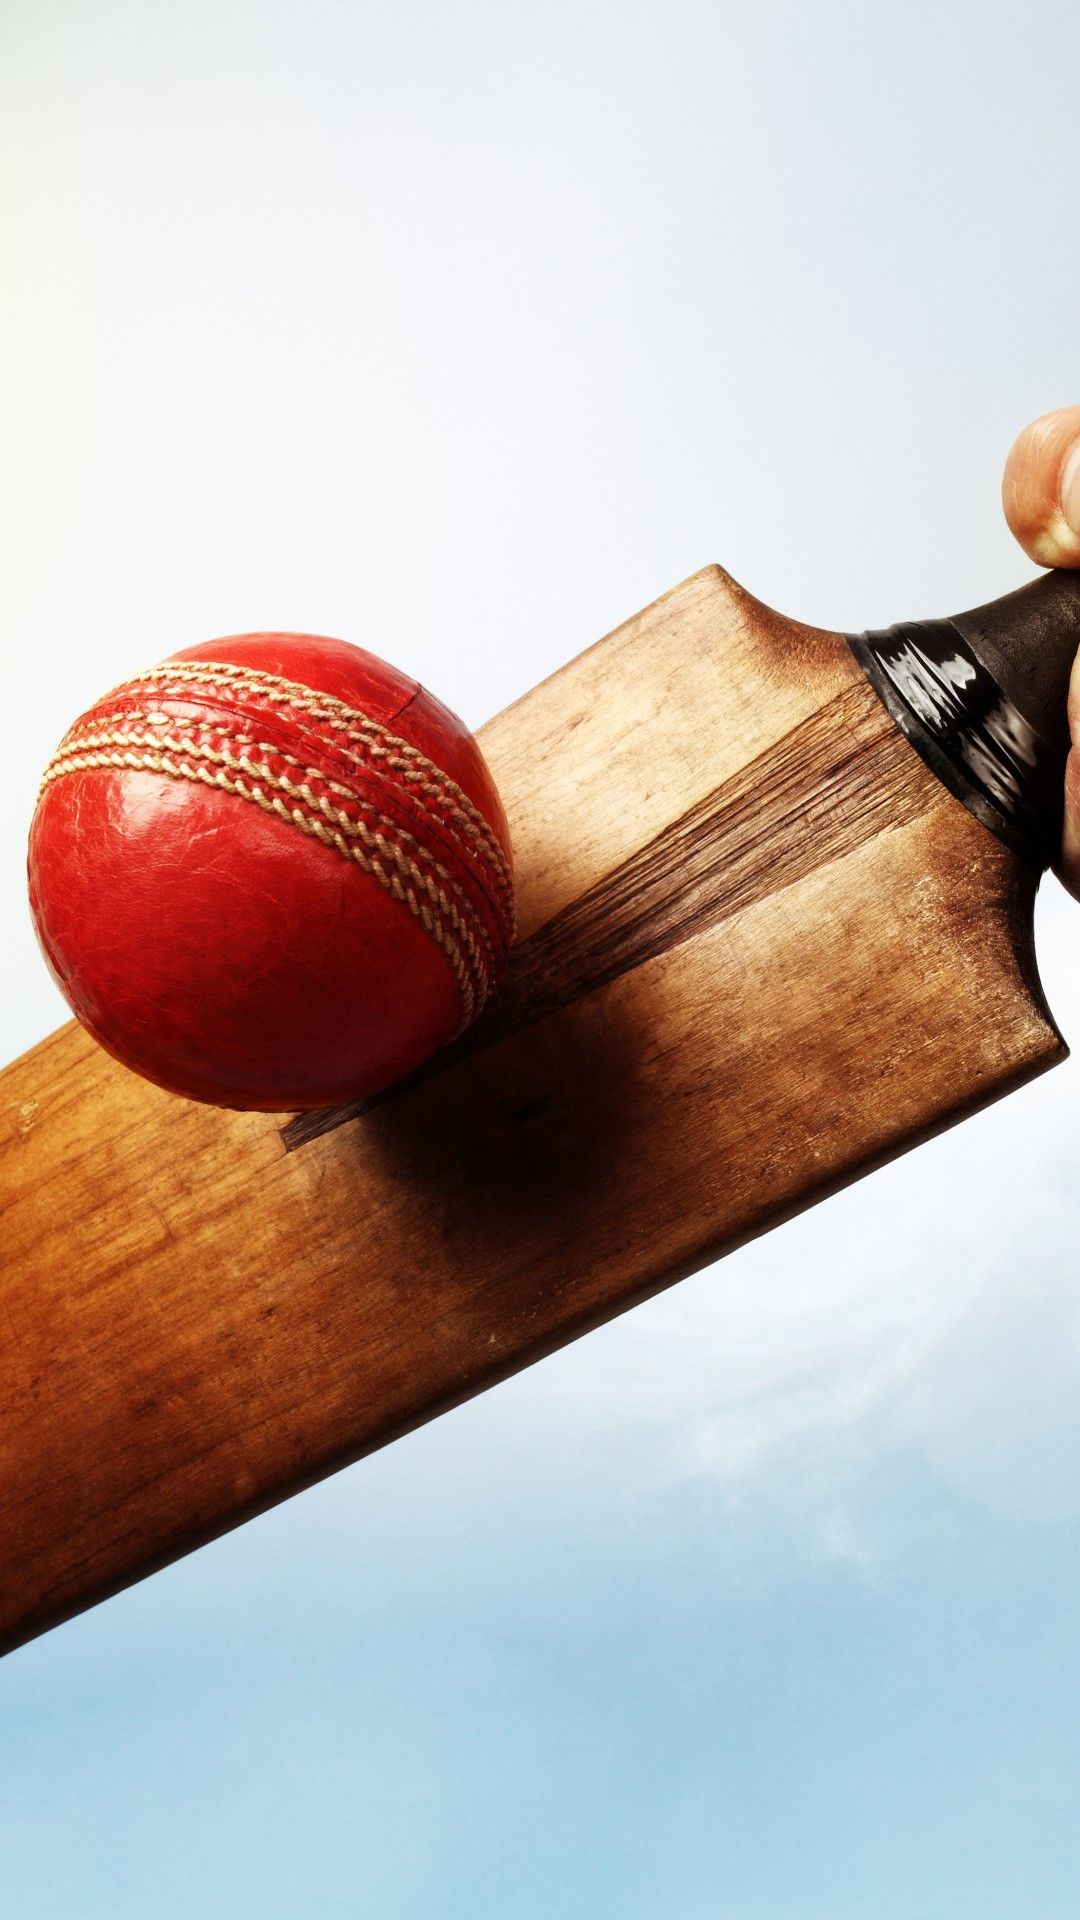 3,238 Cricket Wallpaper Images, Stock Photos & Vectors | Shutterstock